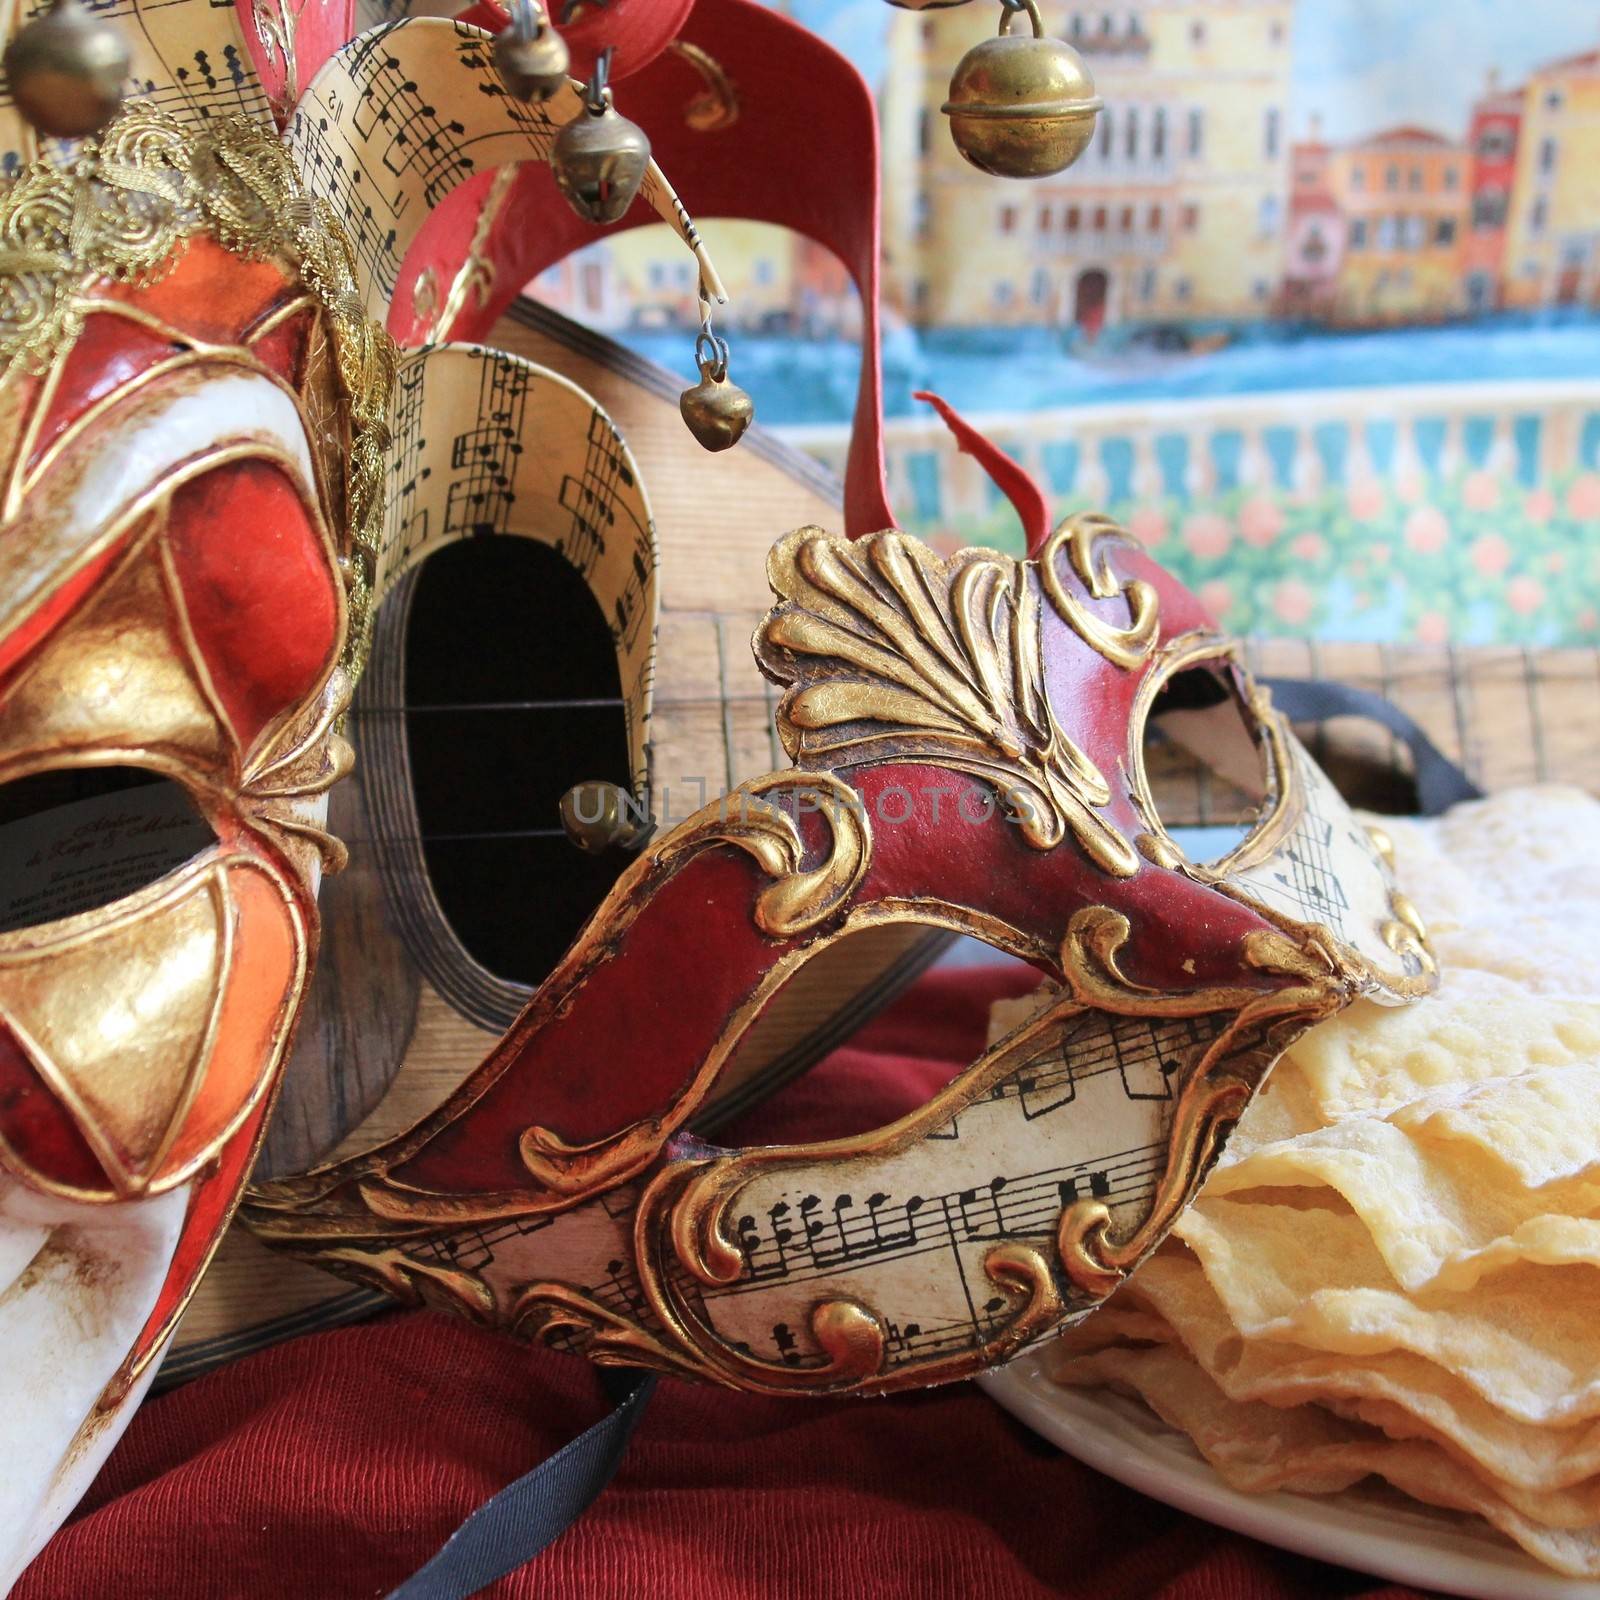 Bouffon and baroque carnival masks